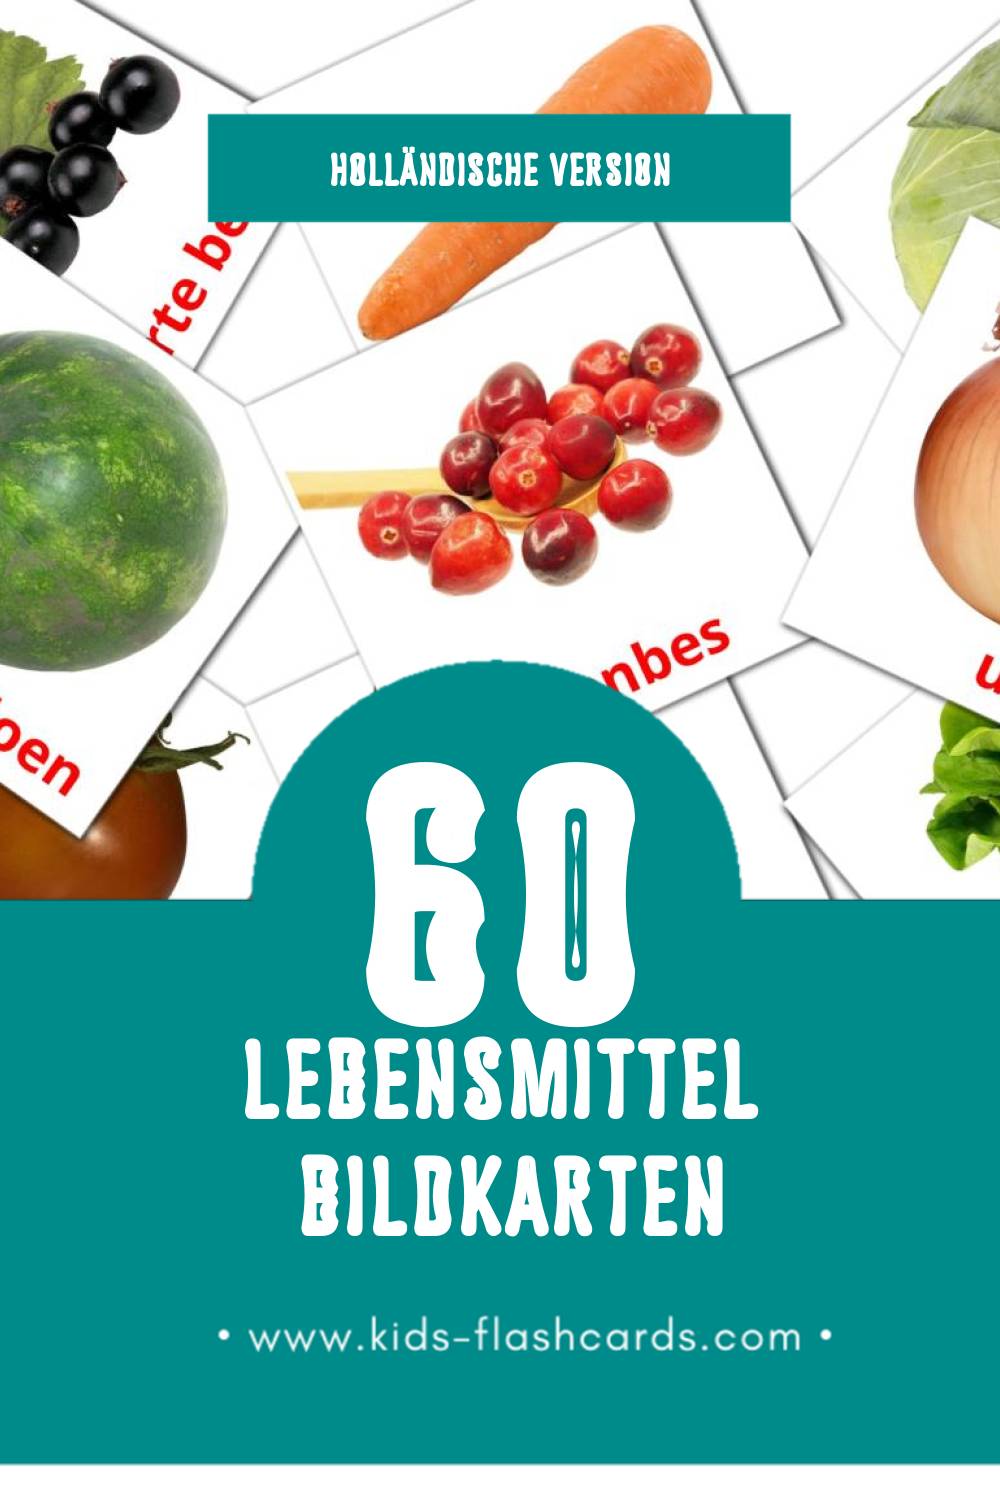 Visual Eten Flashcards für Kleinkinder (60 Karten in Holländisch)